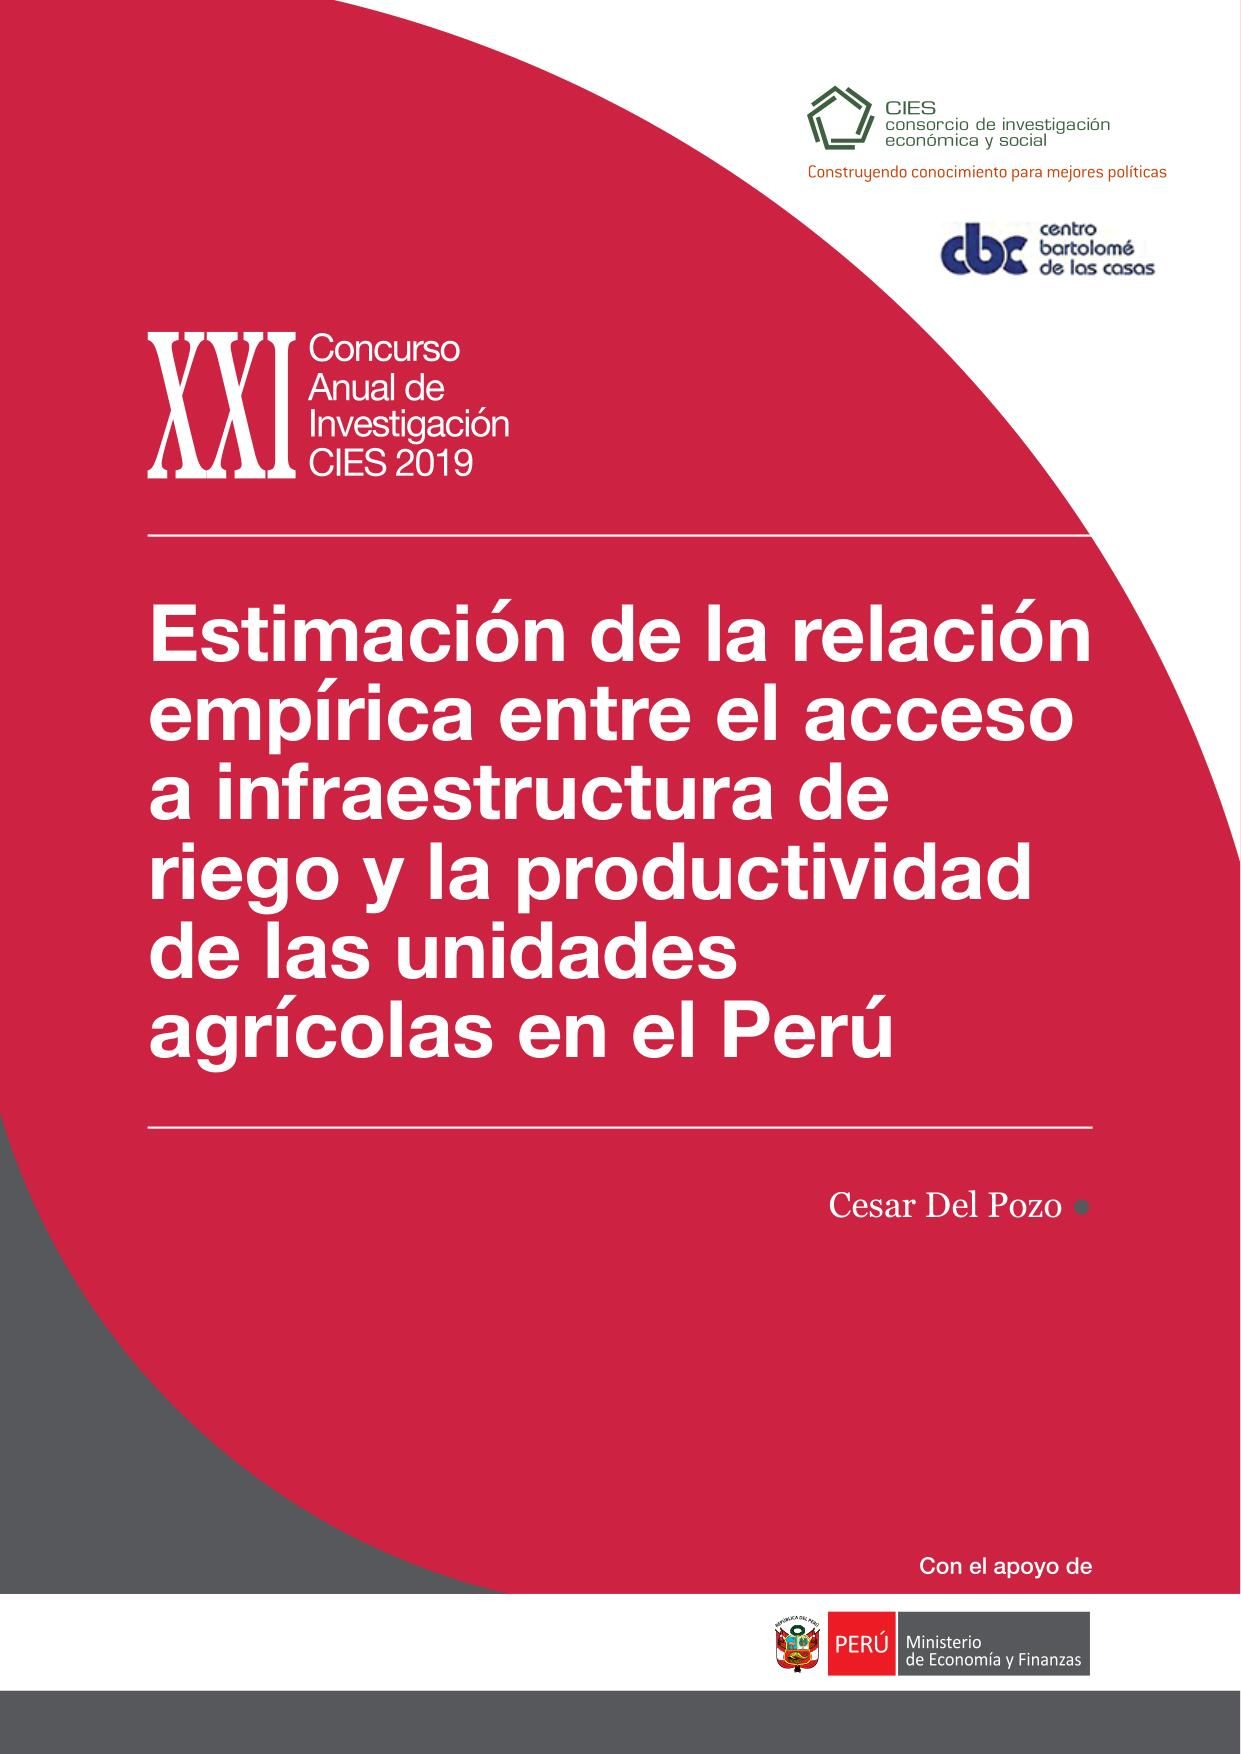 Estimación de la relación entre el acceso a infraestructura de riego y la productividad de unidades agrícolas en el Perú